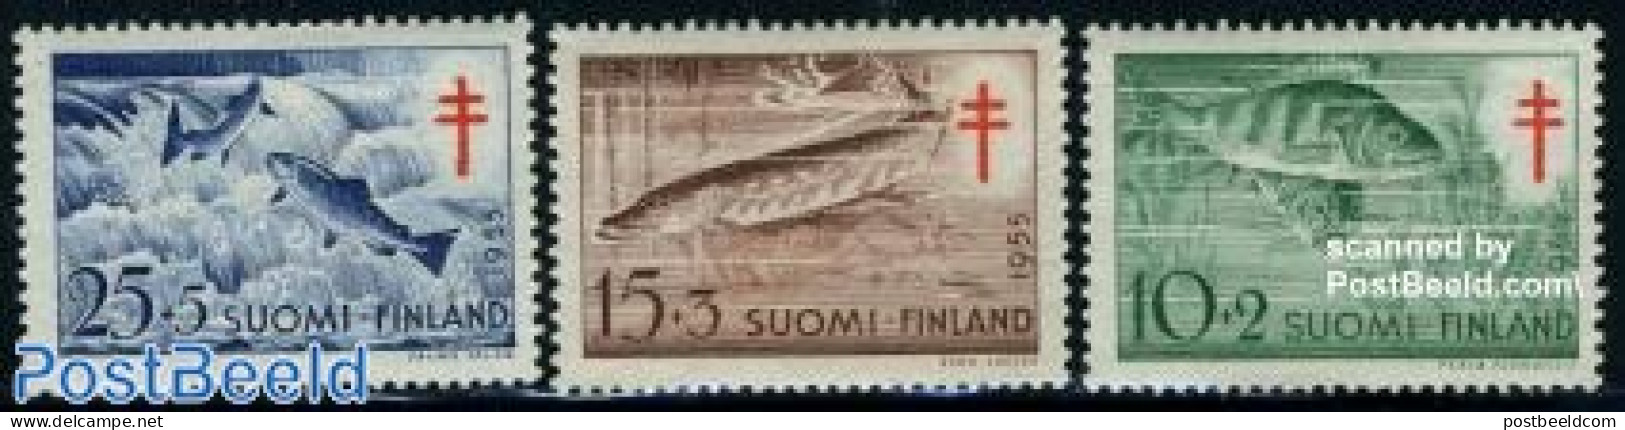 Finland 1955 Anti Tuberculosis, Fish 3v, Mint NH, Health - Nature - Anti Tuberculosis - Fish - Ungebraucht